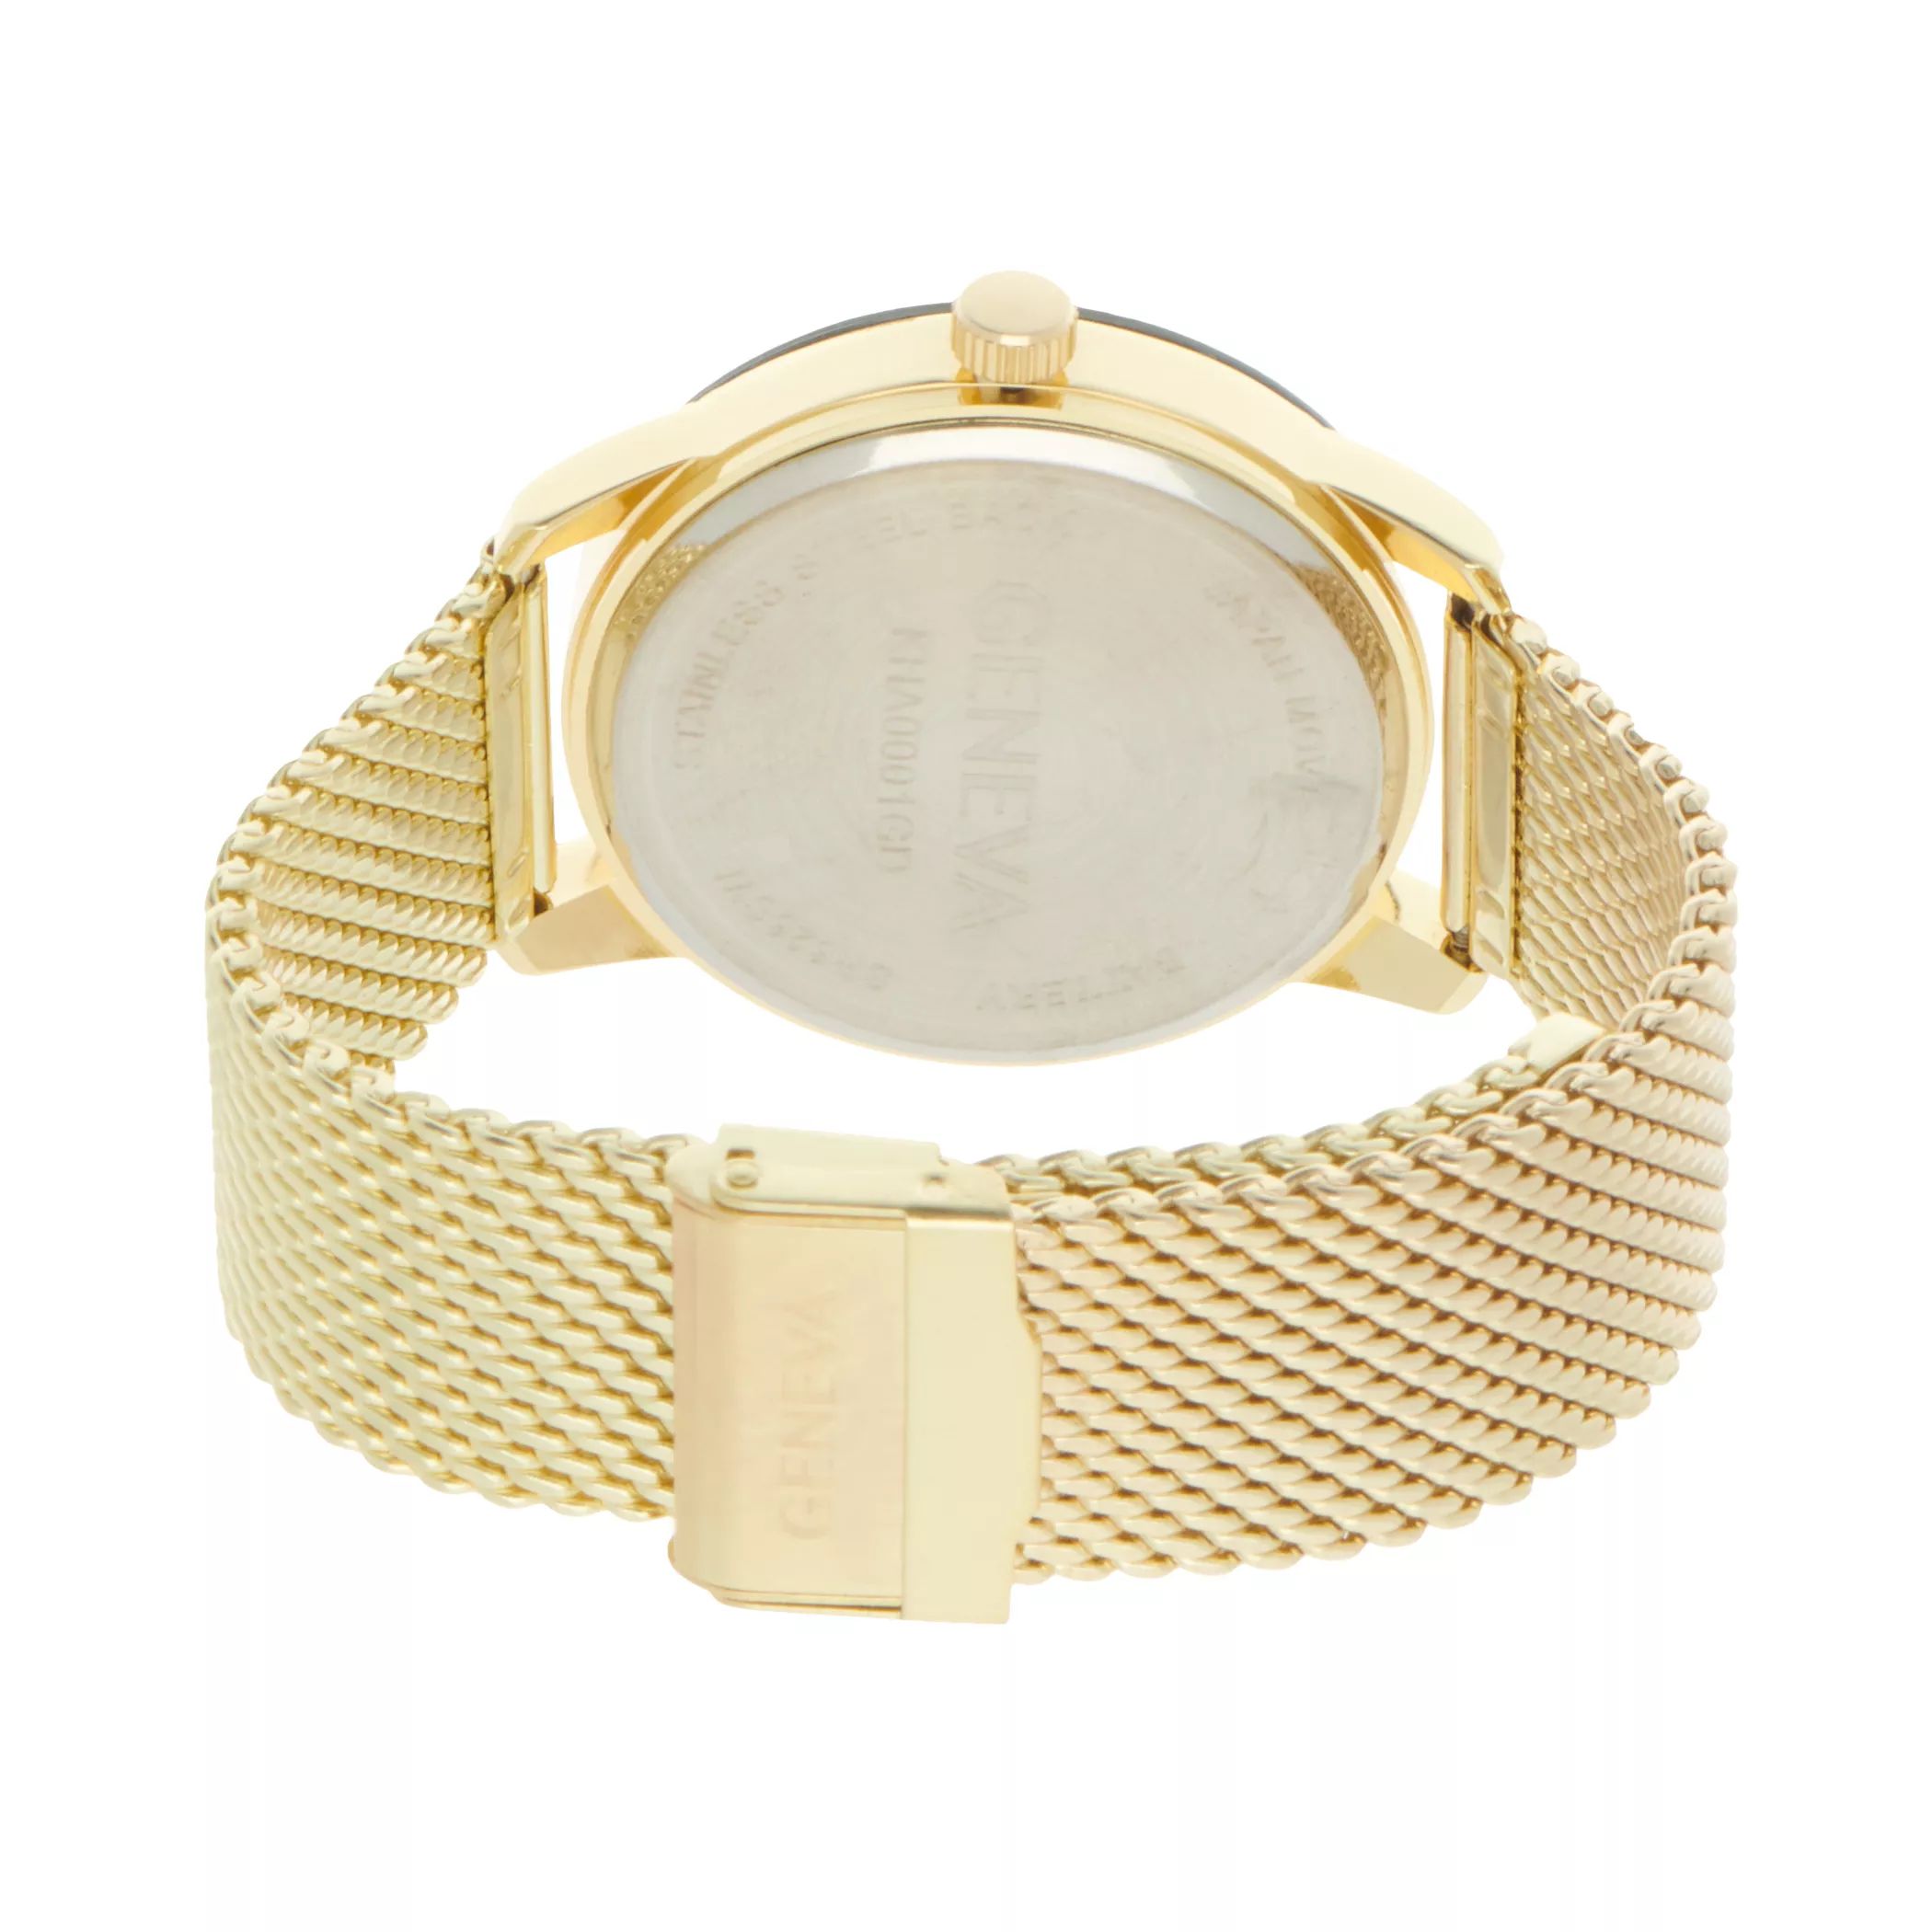 Мужские часы Diamond Accent с сеткой золотистого цвета - KHA0001GD Geneva